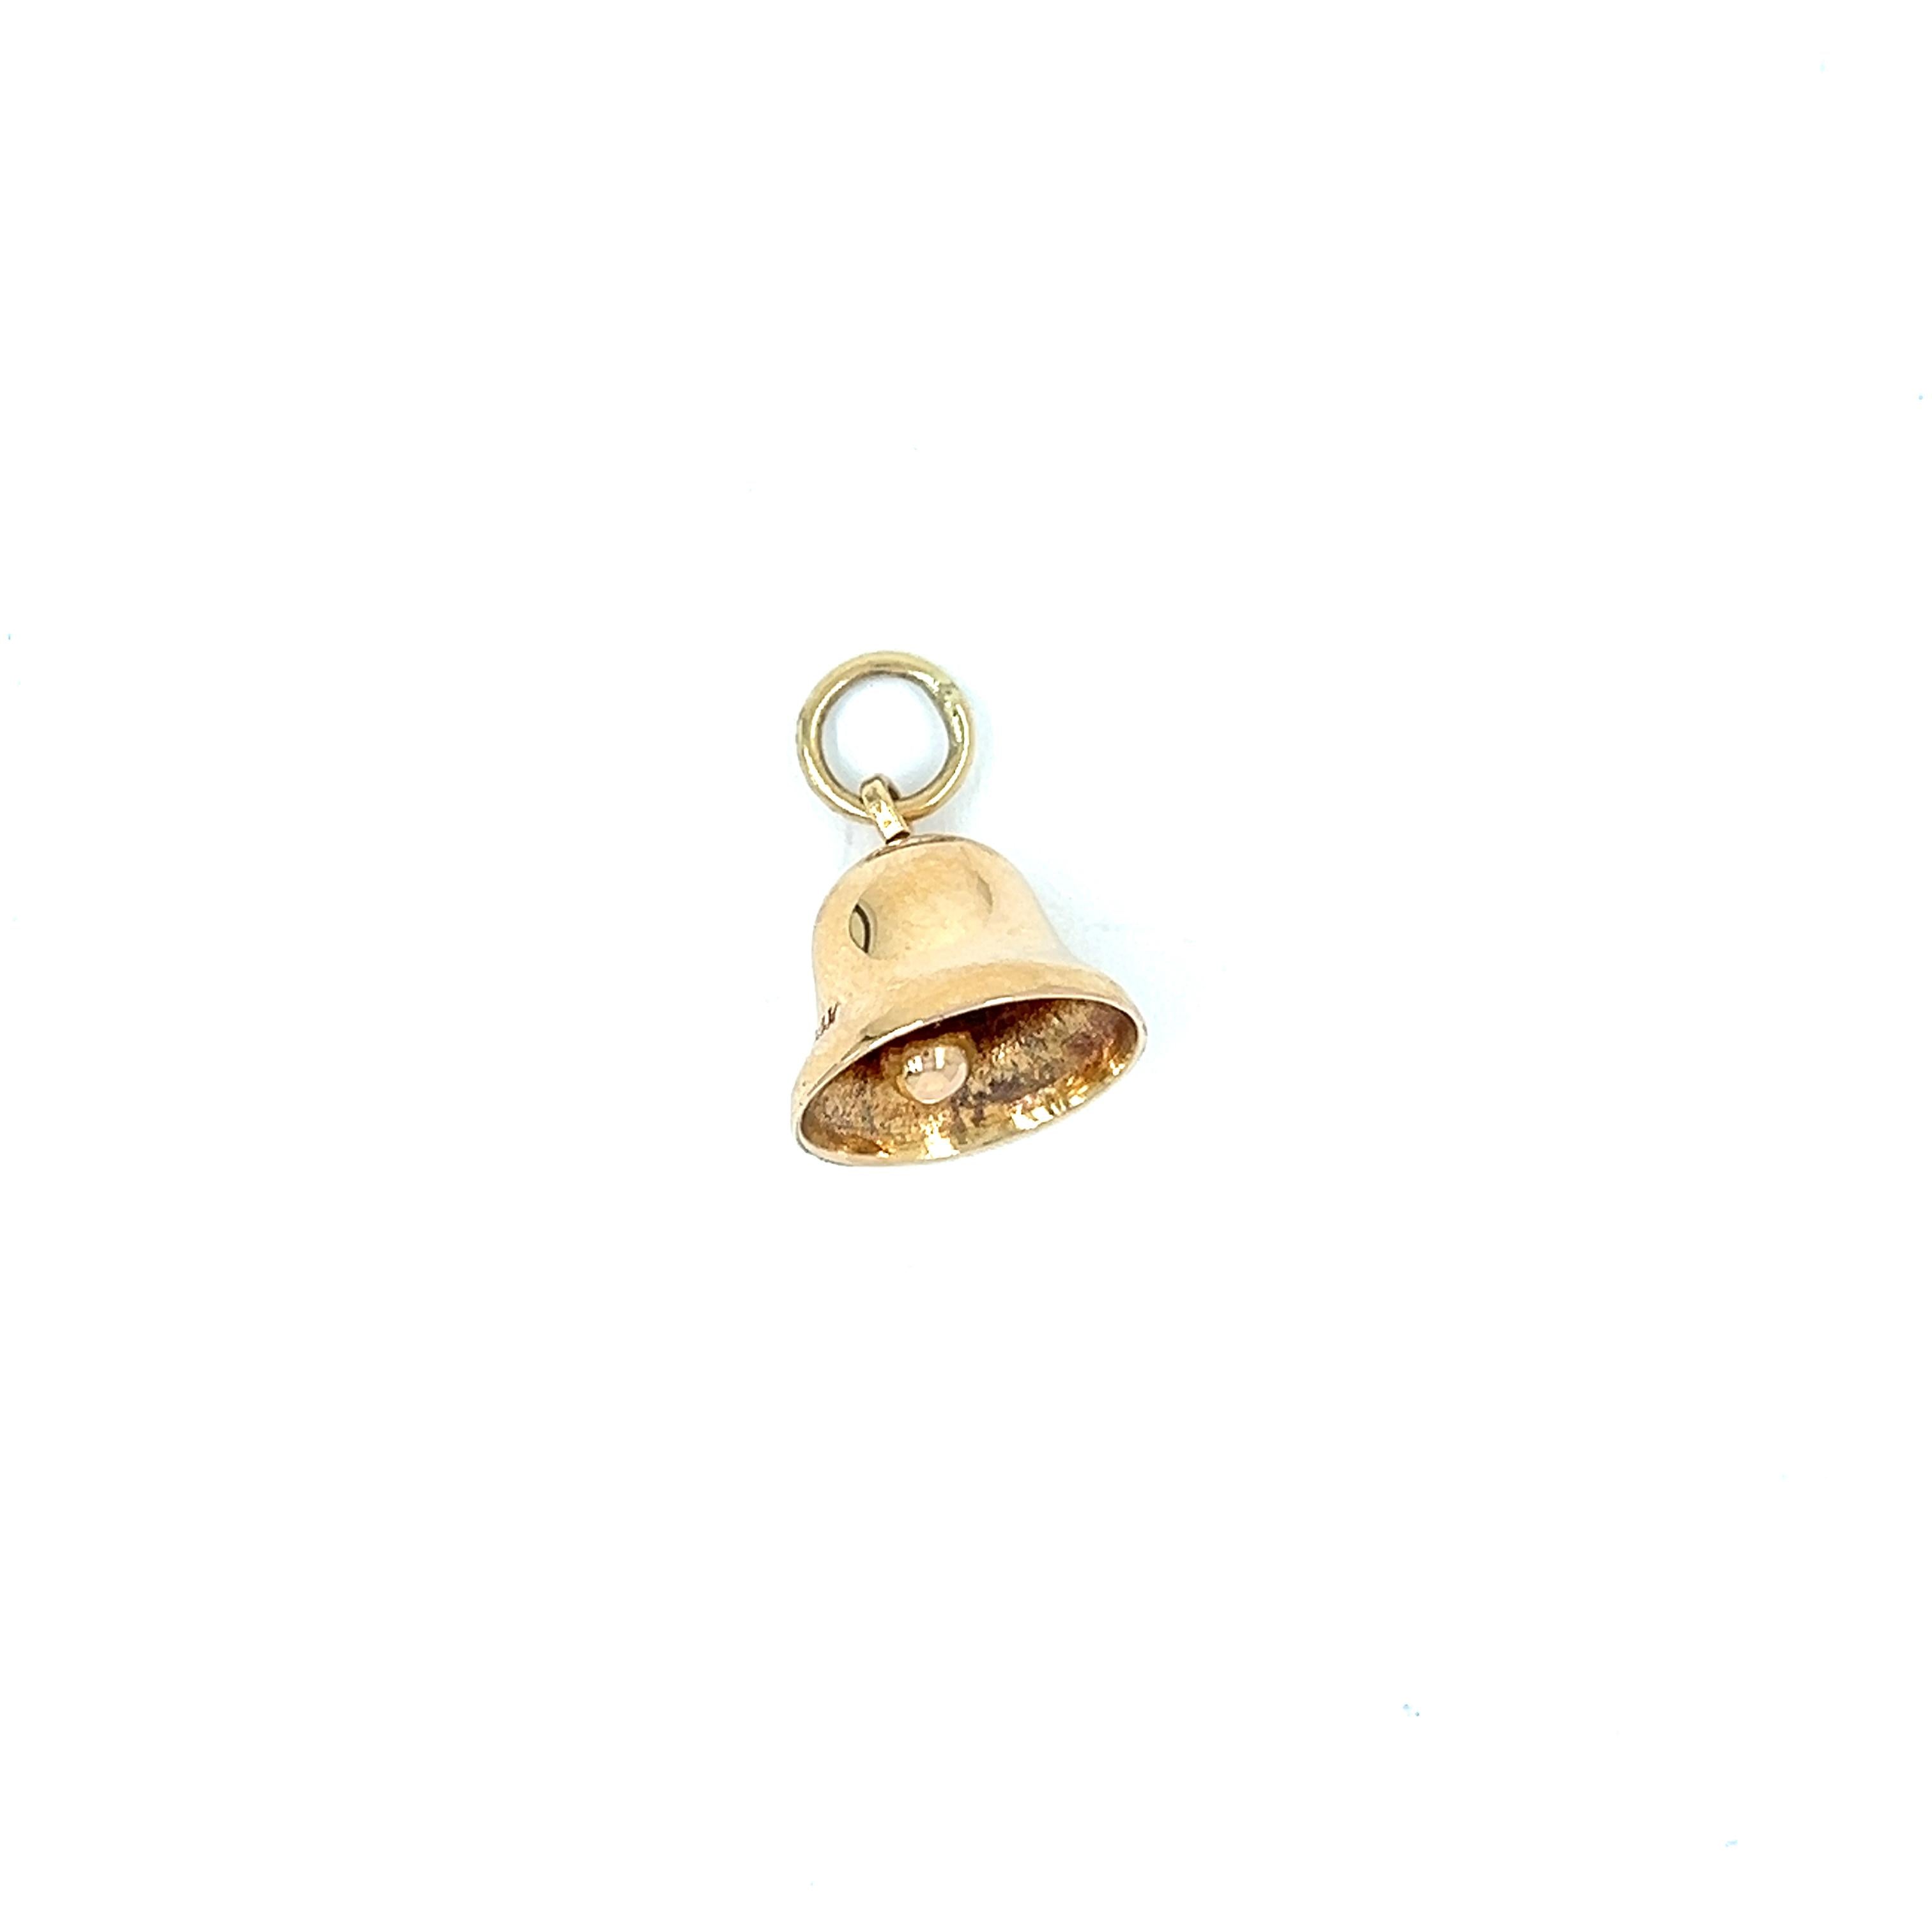 Vintage 14k Gold Bell Charm